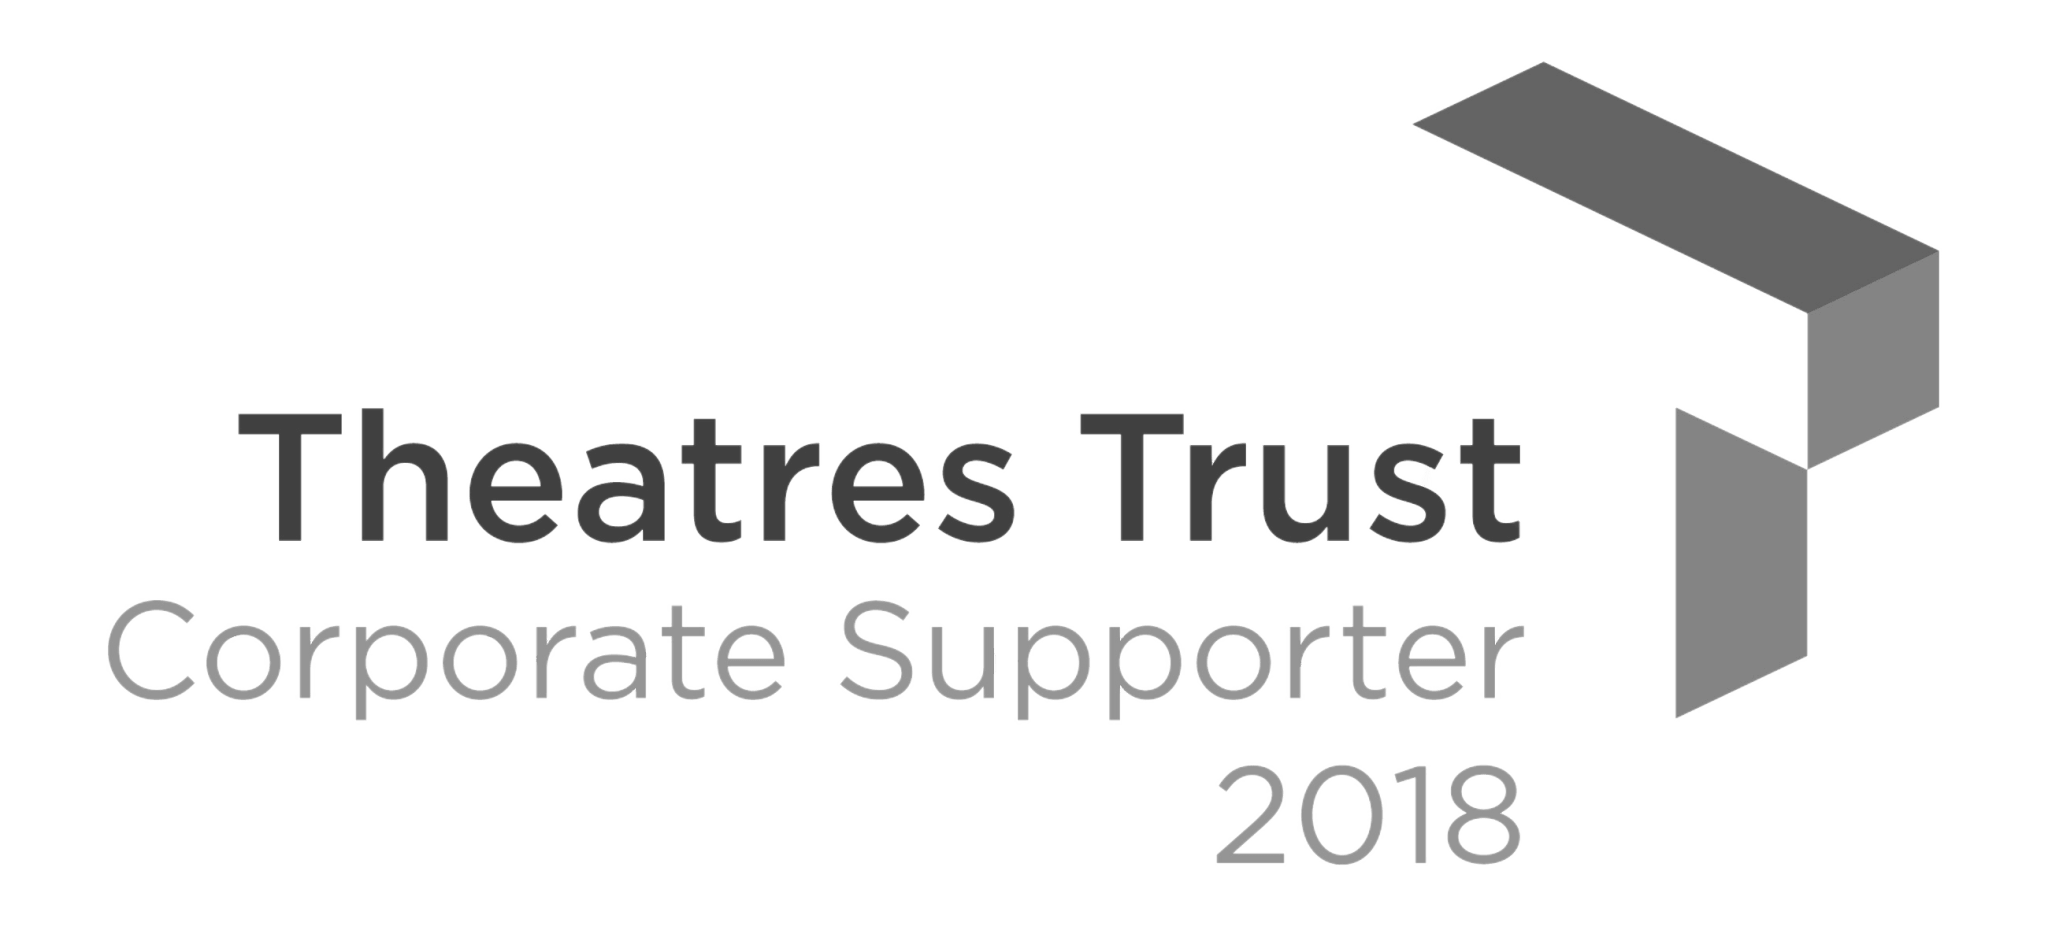 Theatres Trust